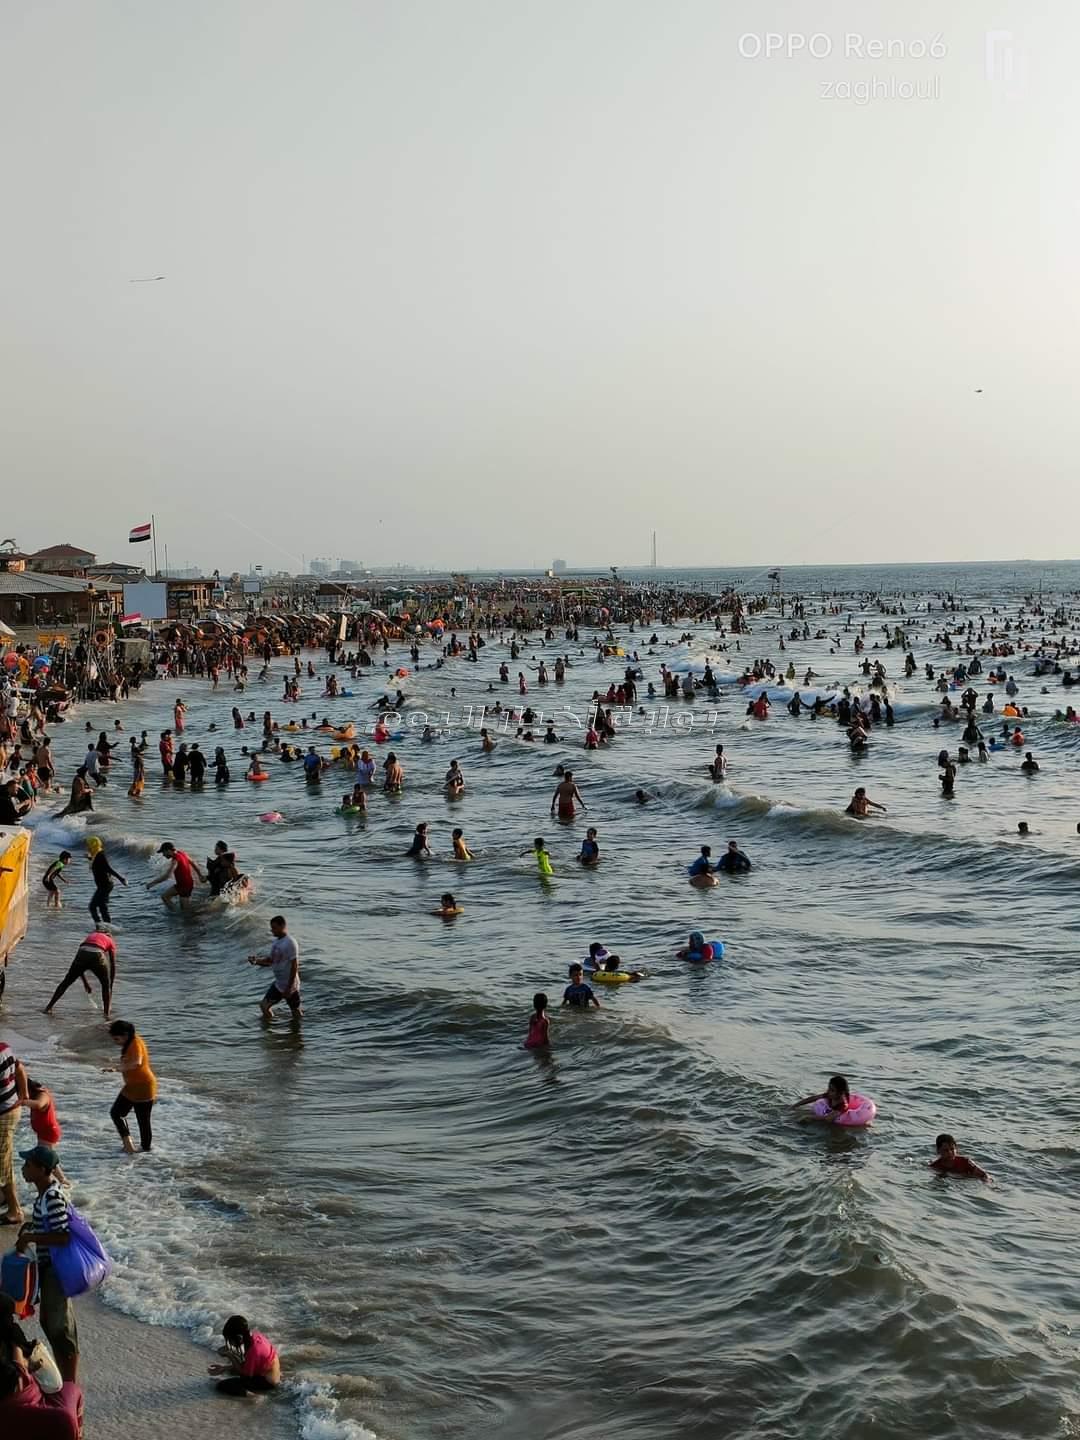 إنقاذ 37 مصطاف من الغرق وتسليم 92 طفل تائه لذويهم بشواطئ رأس البر